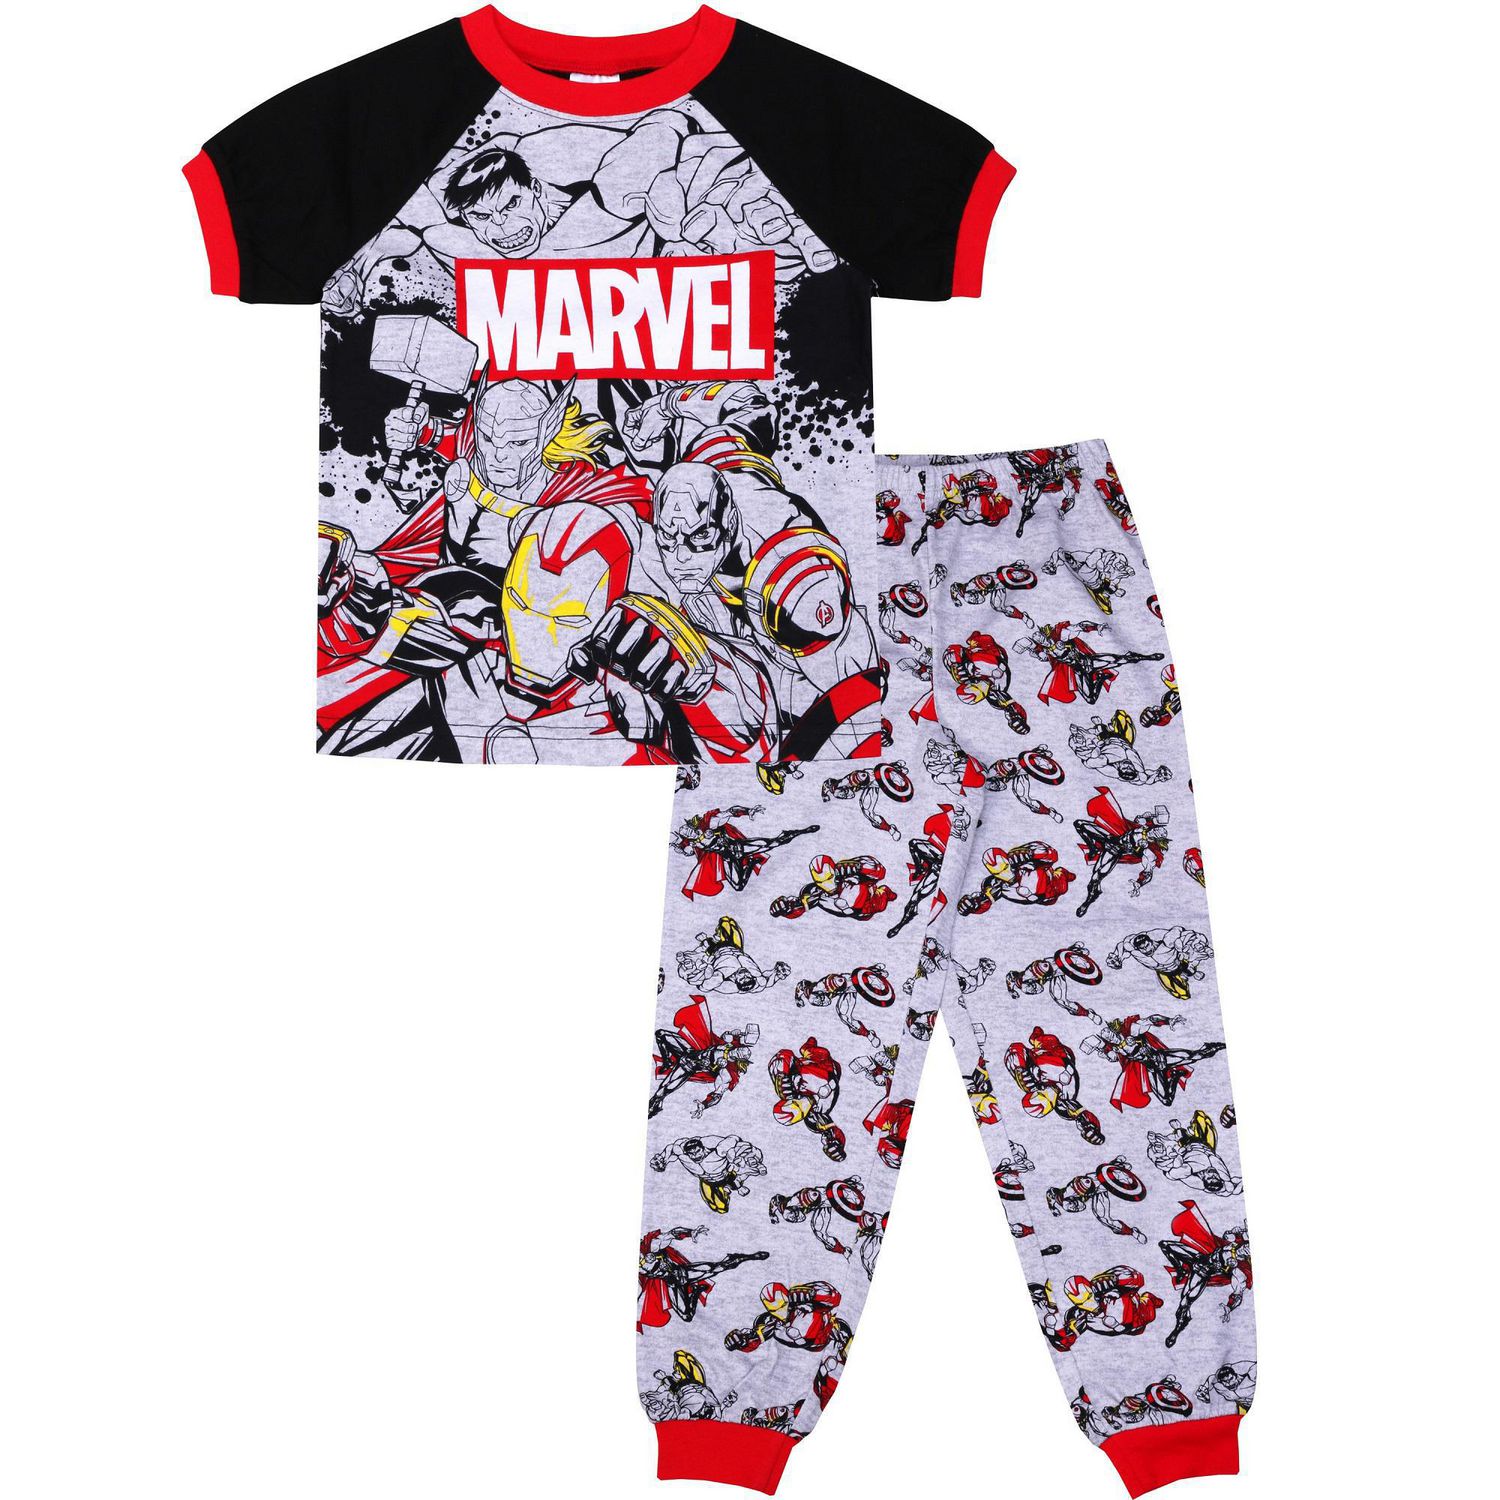 Avengers two piece pyjama set for boys | Walmart Canada